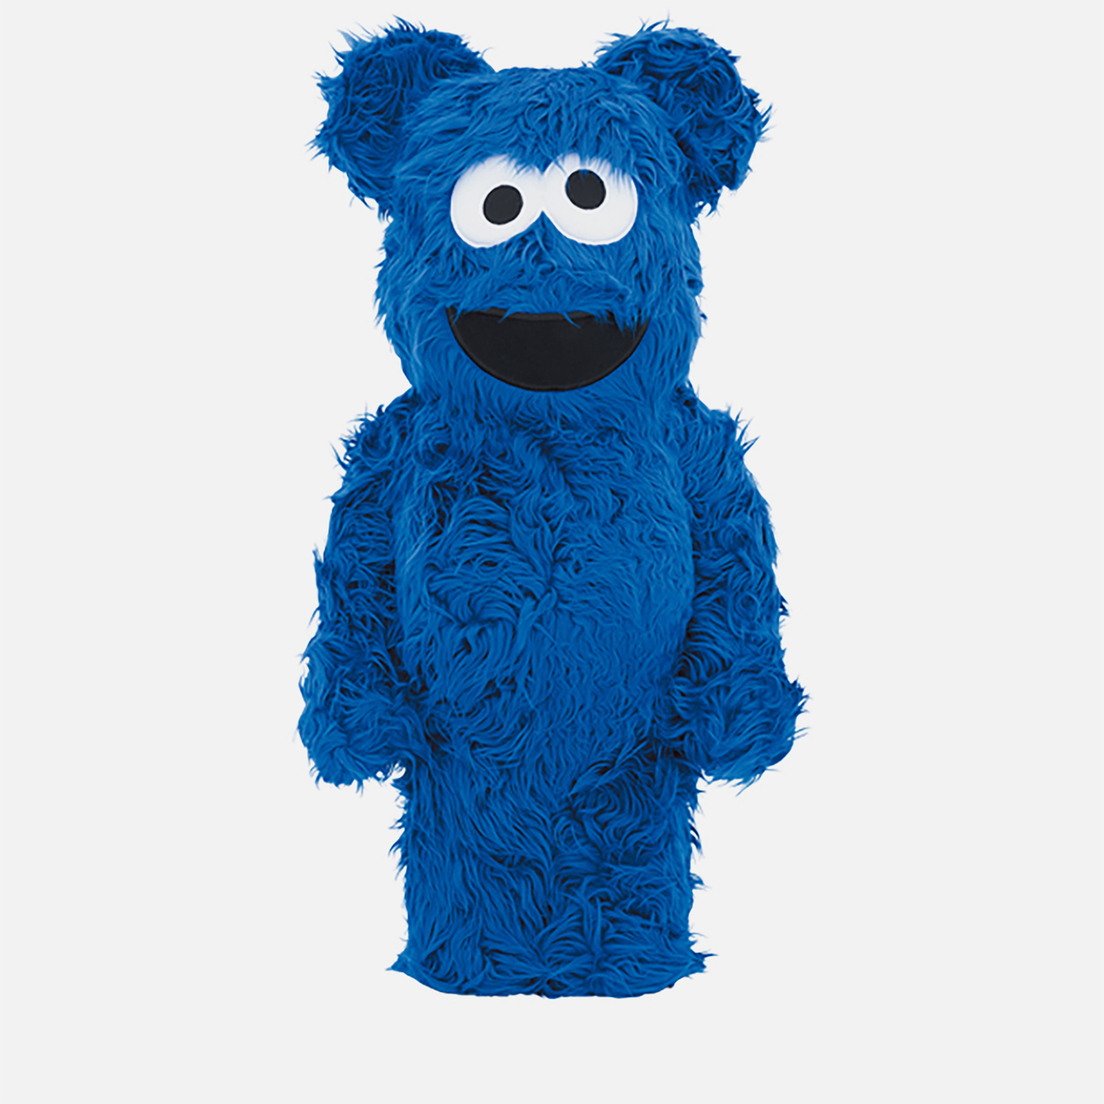 Medicom Toy Игрушка Cookie Monster Costume 1000%